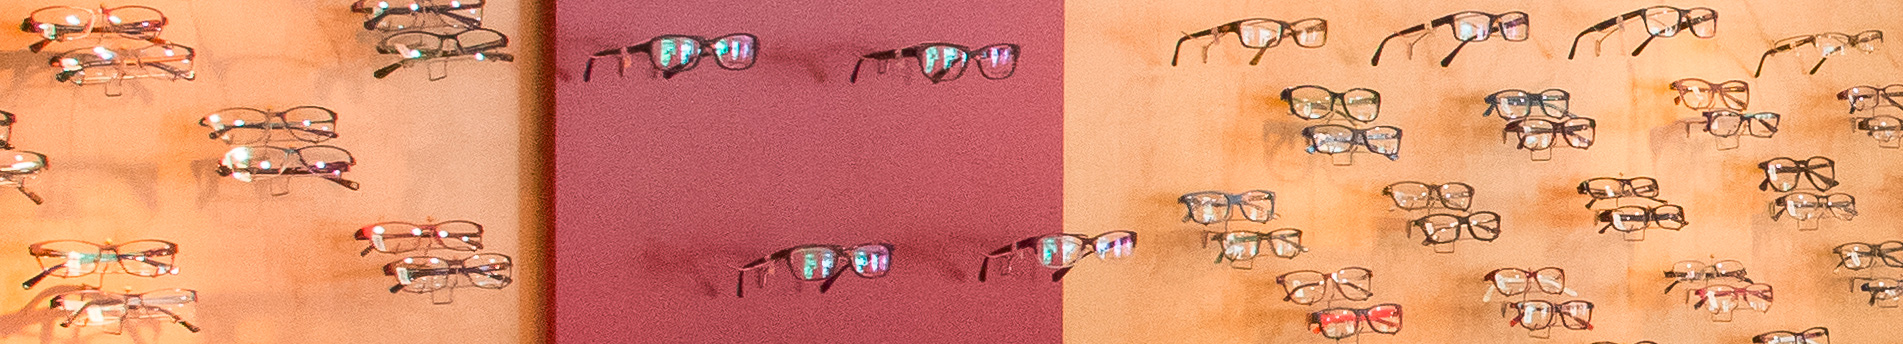 Brillenmode, Sonnenbrillen, Kinderbrillen und Kontaktlinsen bei Optik Nissen